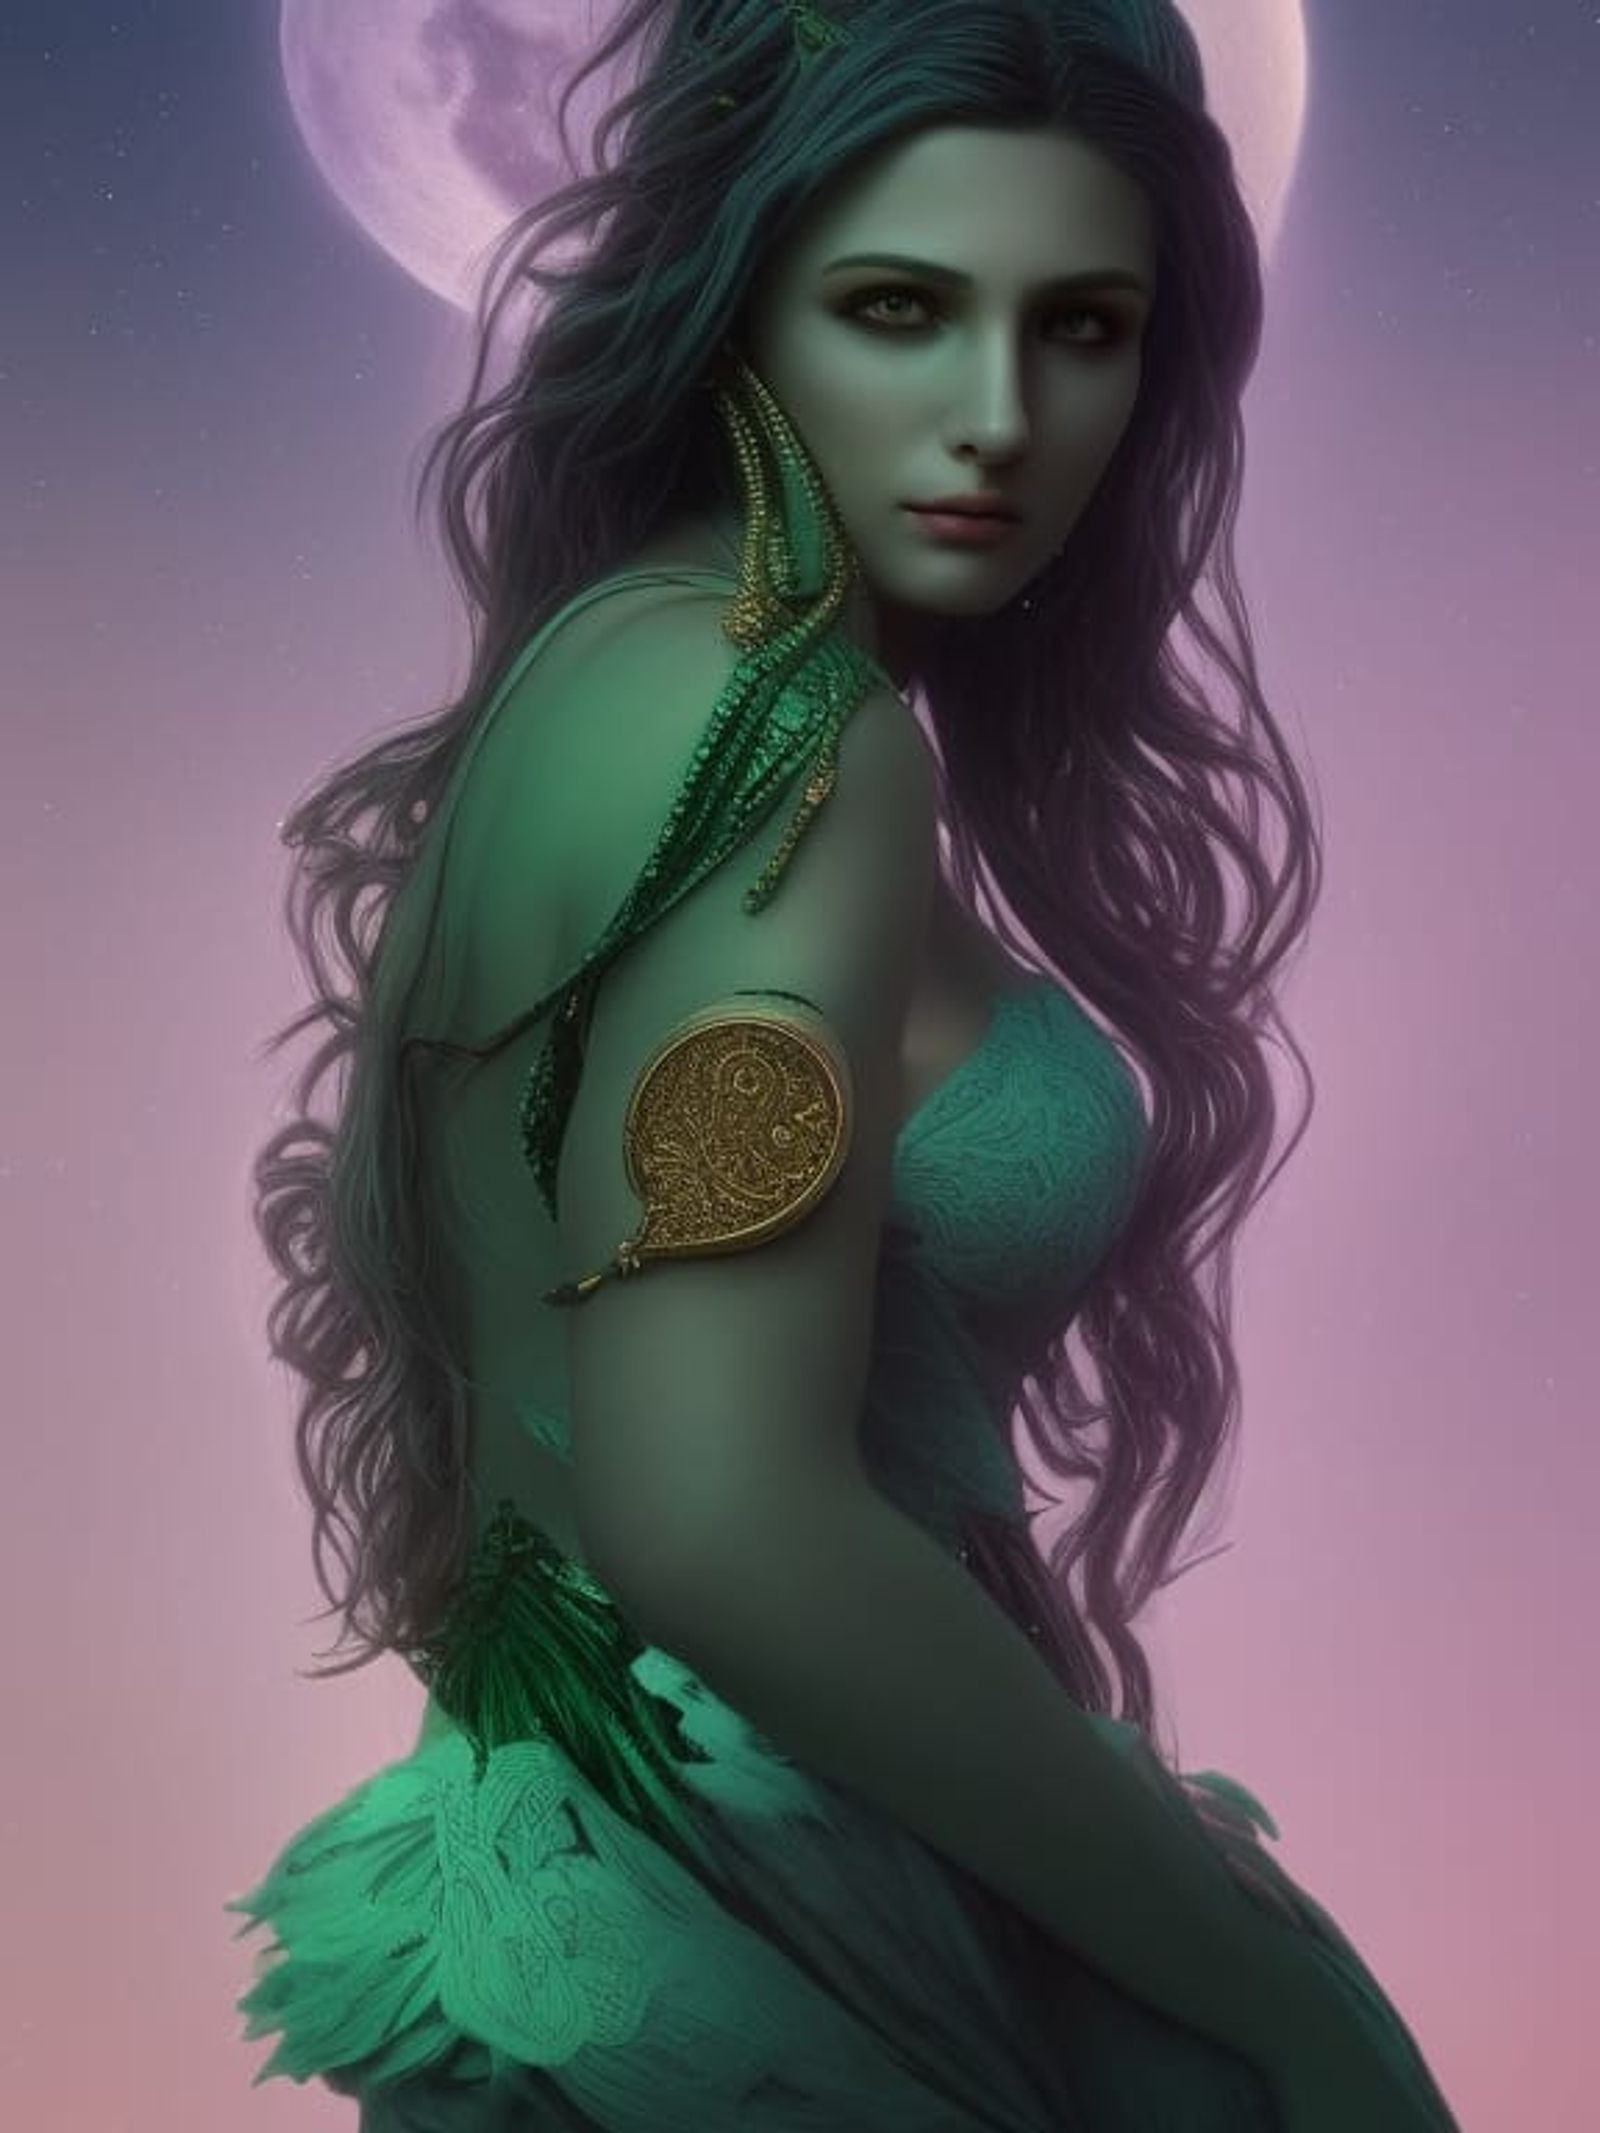 selene goddess of the moon